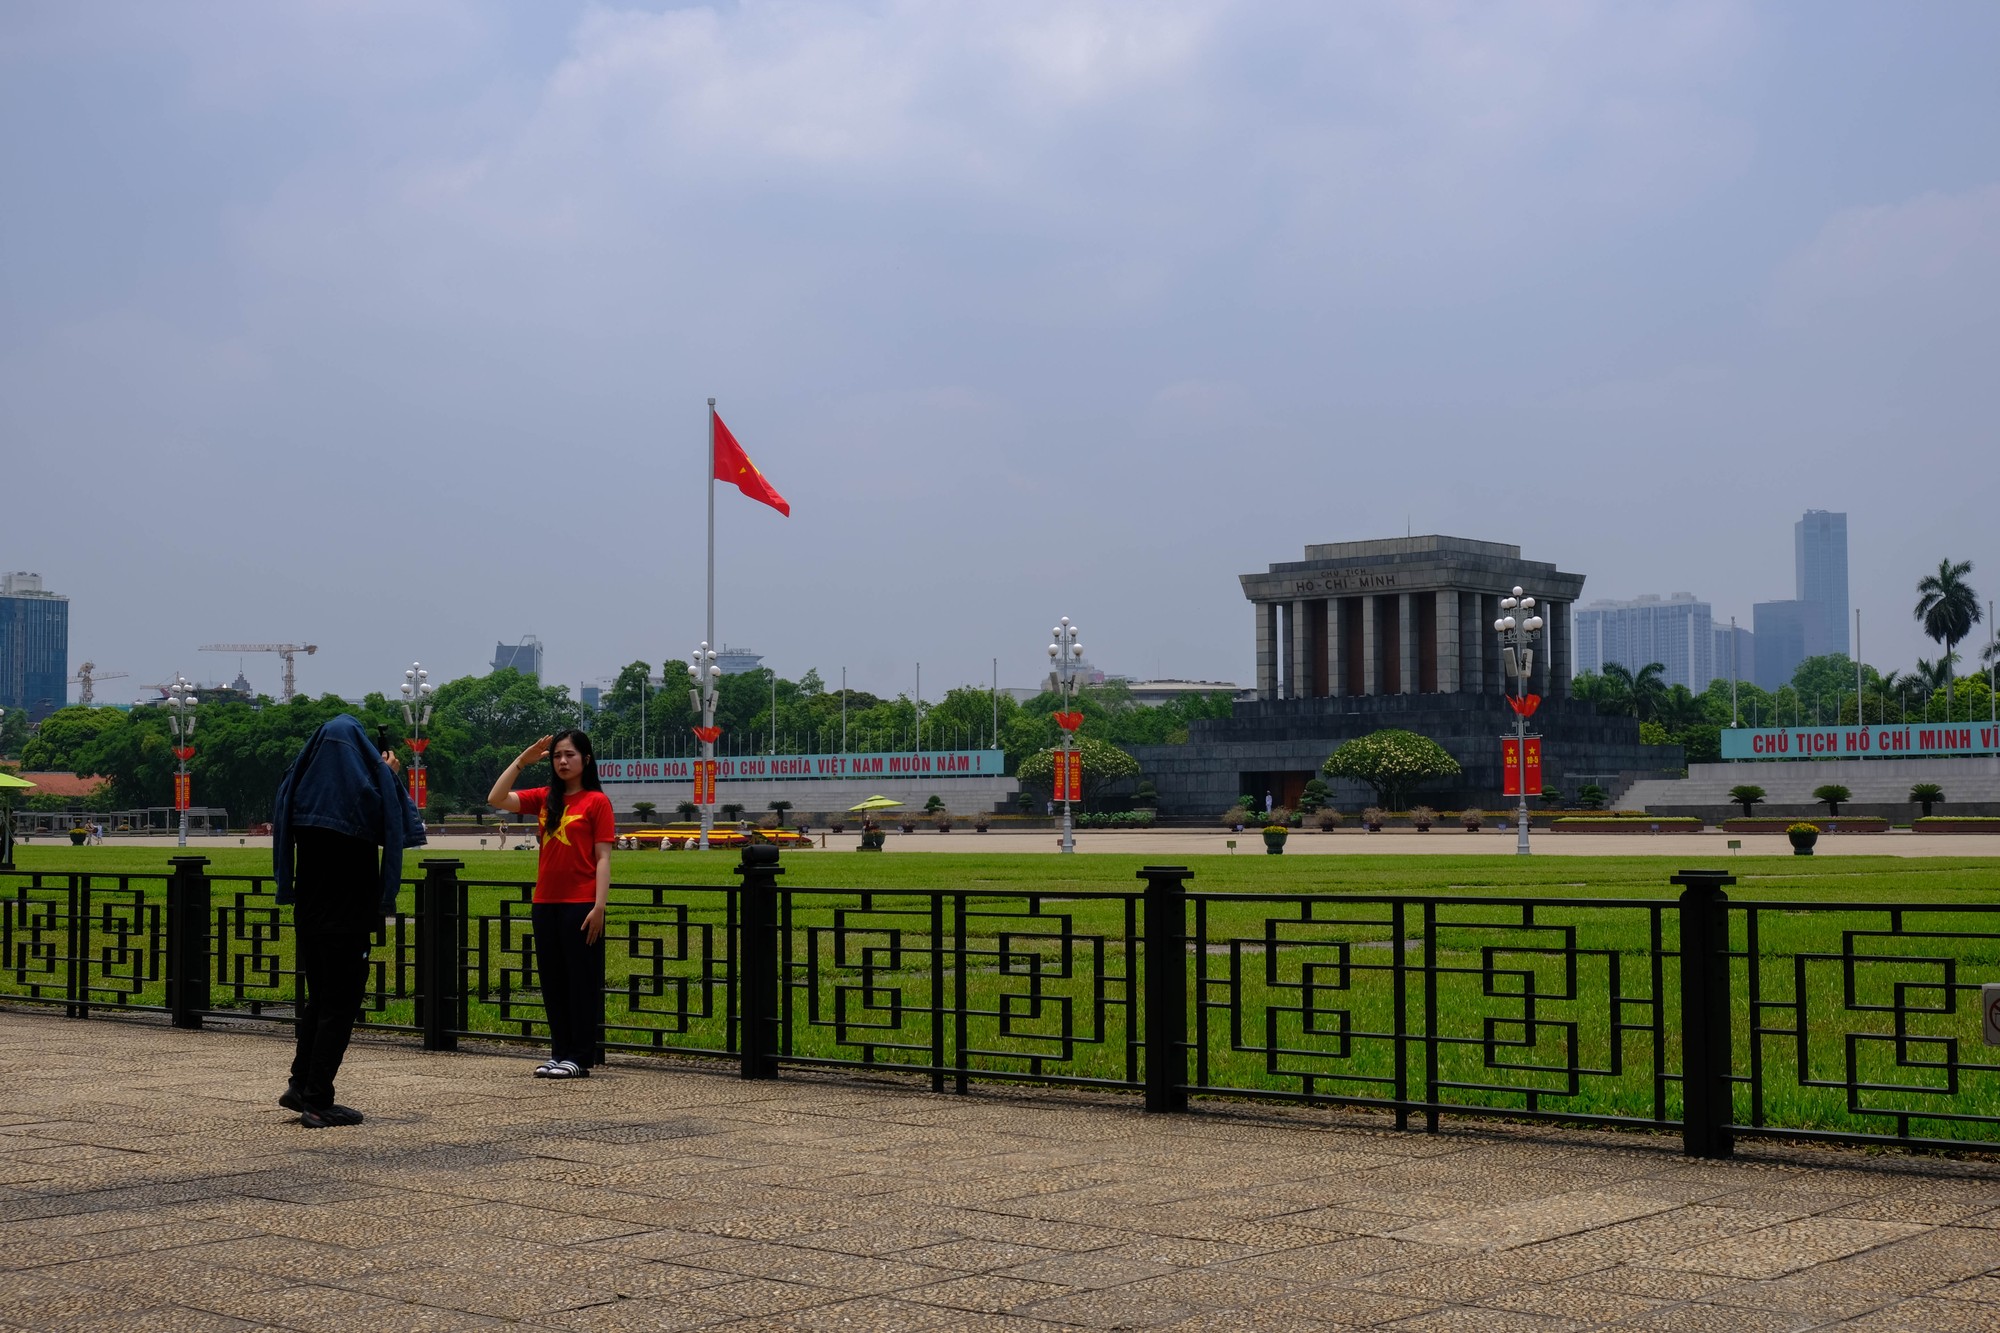 Chị Mai, một khách du lịch từ TP HCM tới thăm Hà Nội dịp này chia sẻ rằng chị không khỏi xúc động khi đúng dịp sinh nhật Hồ Chủ tịch được có mặt tại Lăng Bác. Ảnh: Lê An/Mekong ASEAN.